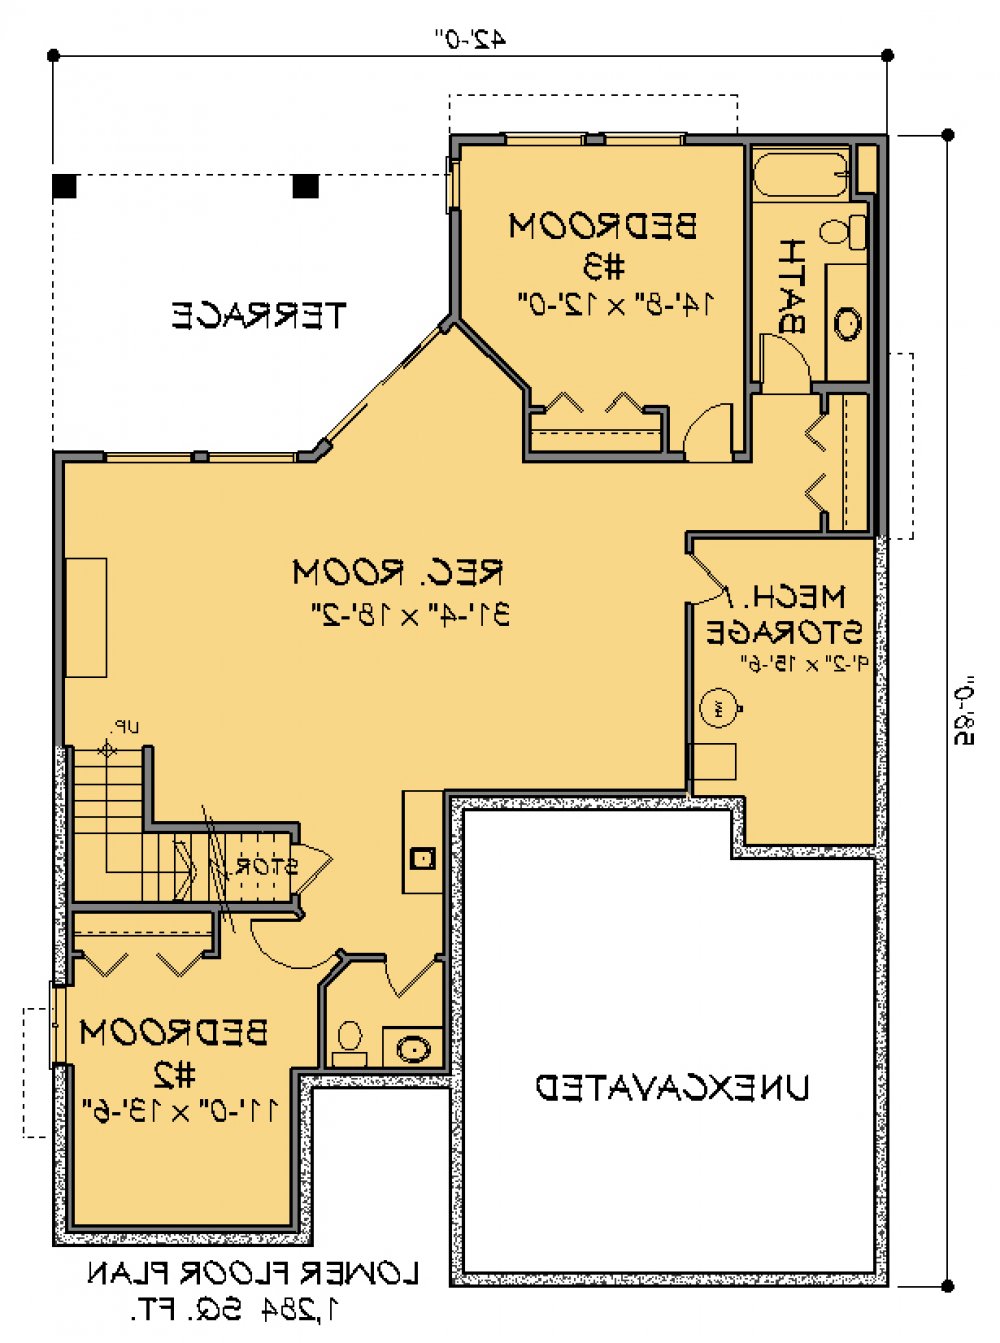 House Plan E1340-10  Lower Floor Plan REVERSE